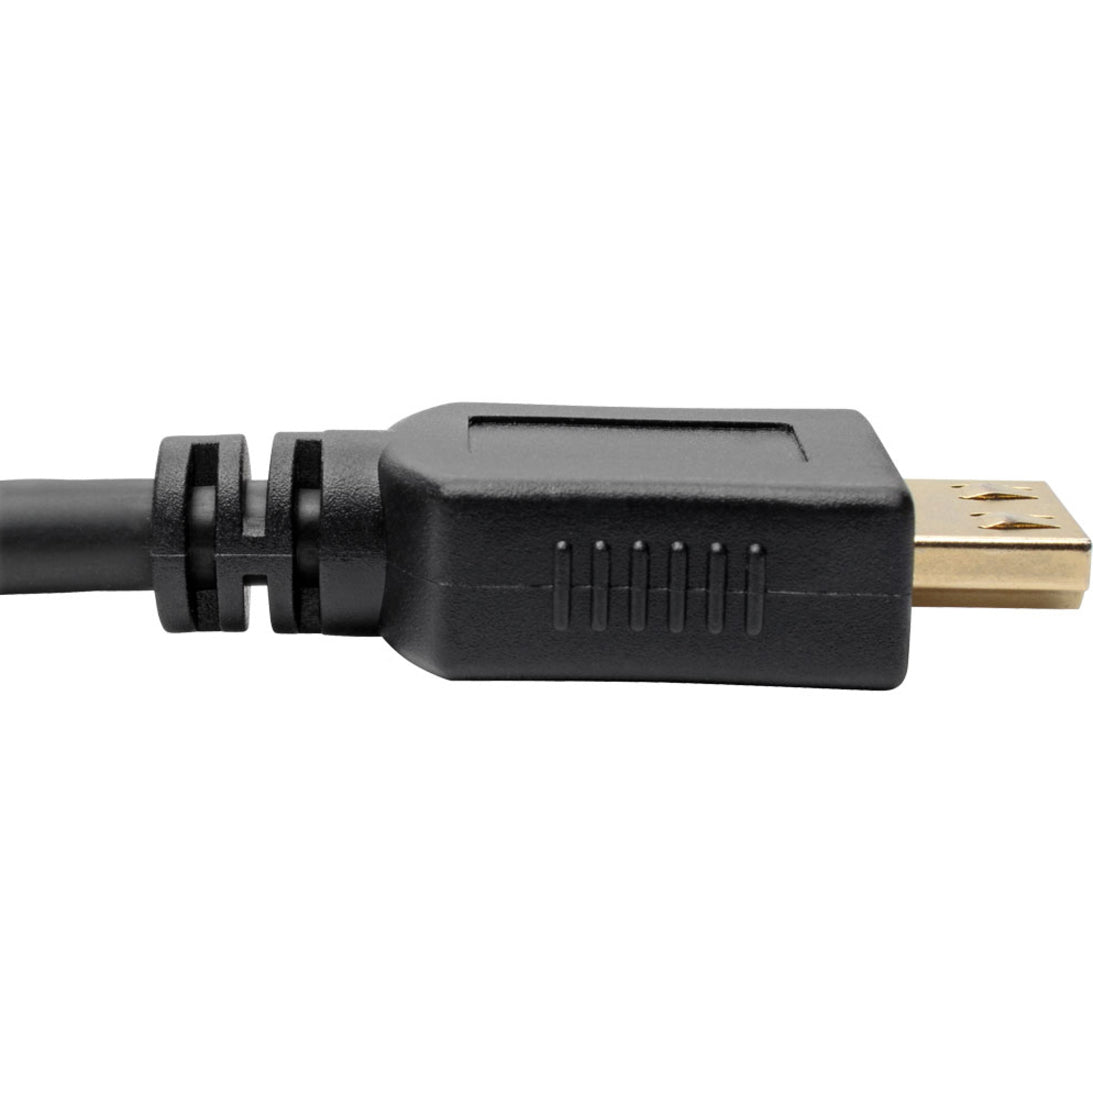 تريب لايت سلك HDMI عالي السرعة ، قطر 6 أقدام ، مع موصلات متصاعدة - 4K ، أسود